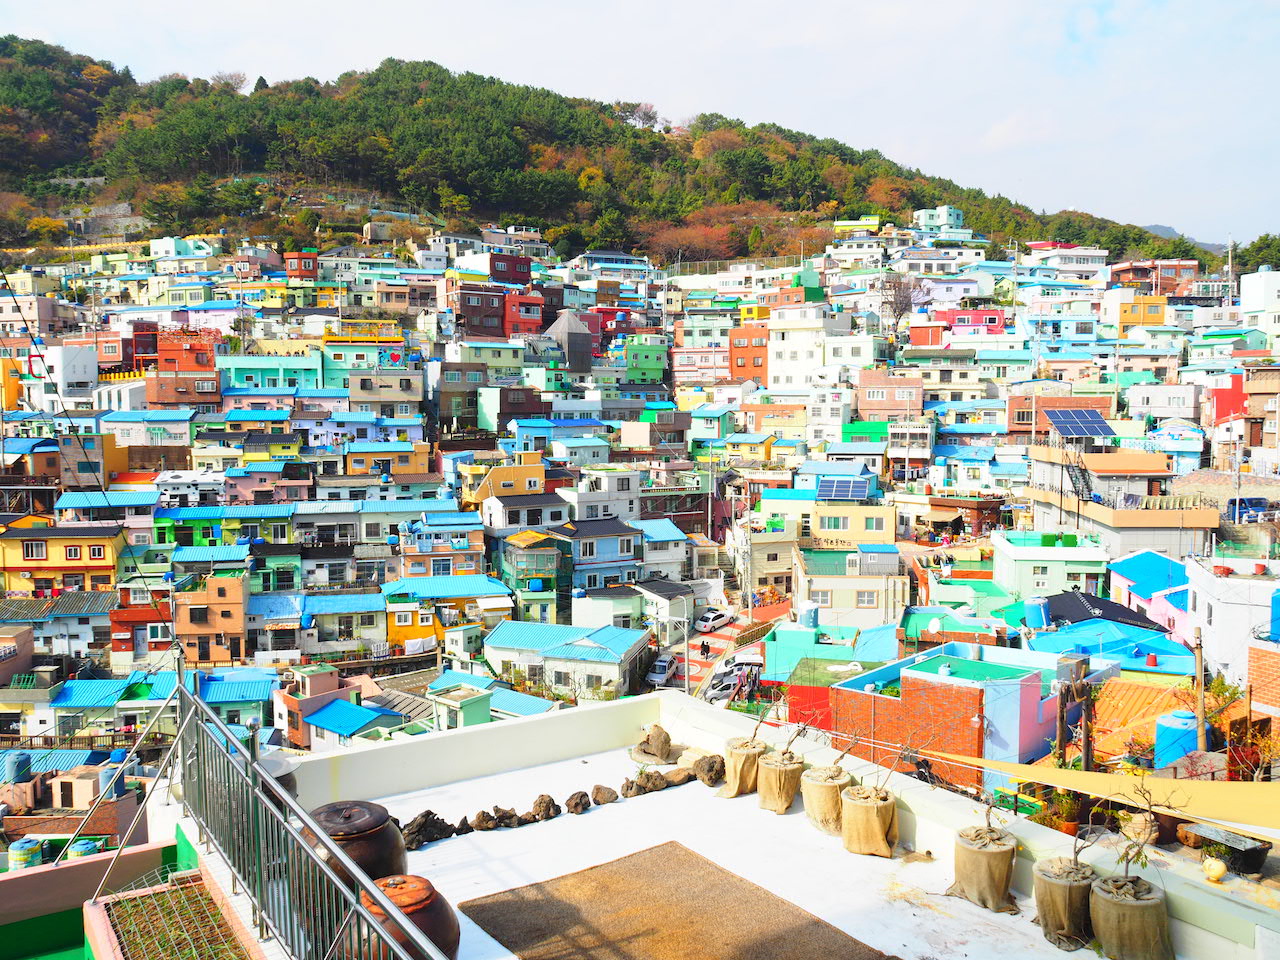 映画heroのロケ地にもなった 韓国 釜山にある甘川文化村に行ってみた Tabizine 人生に旅心を